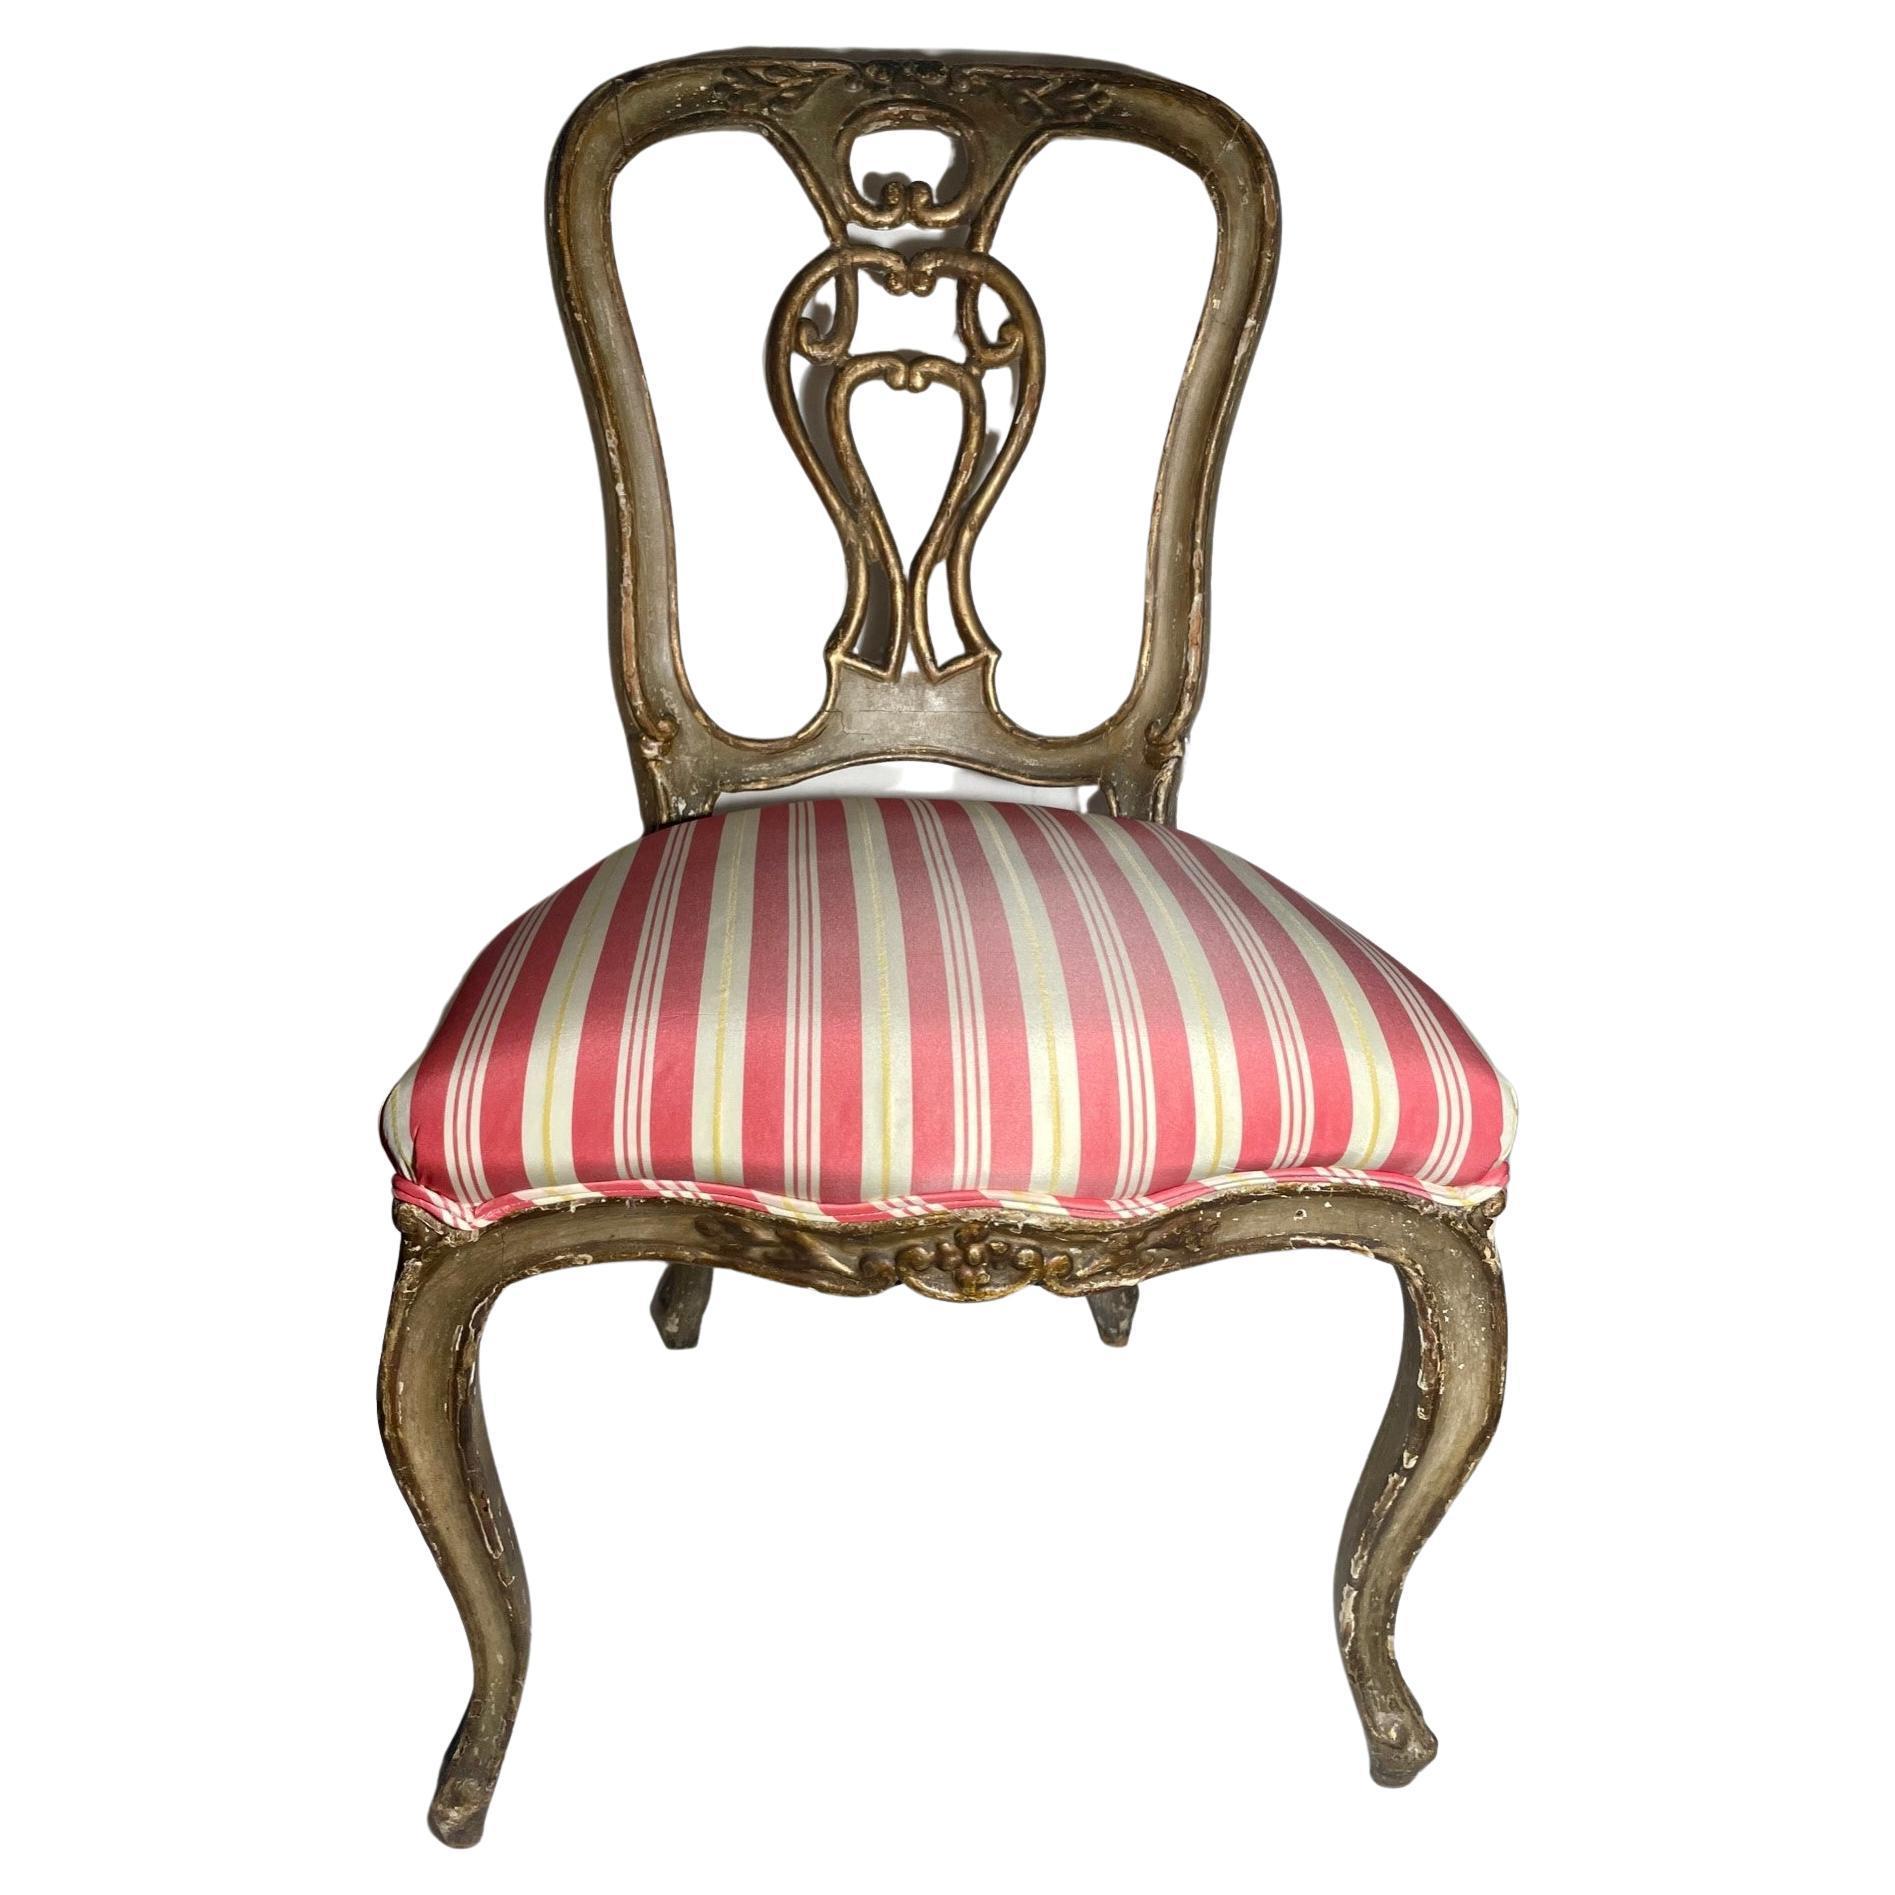 Belle chaise antique rococo vénitienne du 18e siècle, polychrome et dorée

Magnifique chaise d'appoint vénitienne en bois sculpté vert et doré. Cette chaise rococo est peinte en polychrome avec des accents dorés. Cette élégante chaise est sculptée